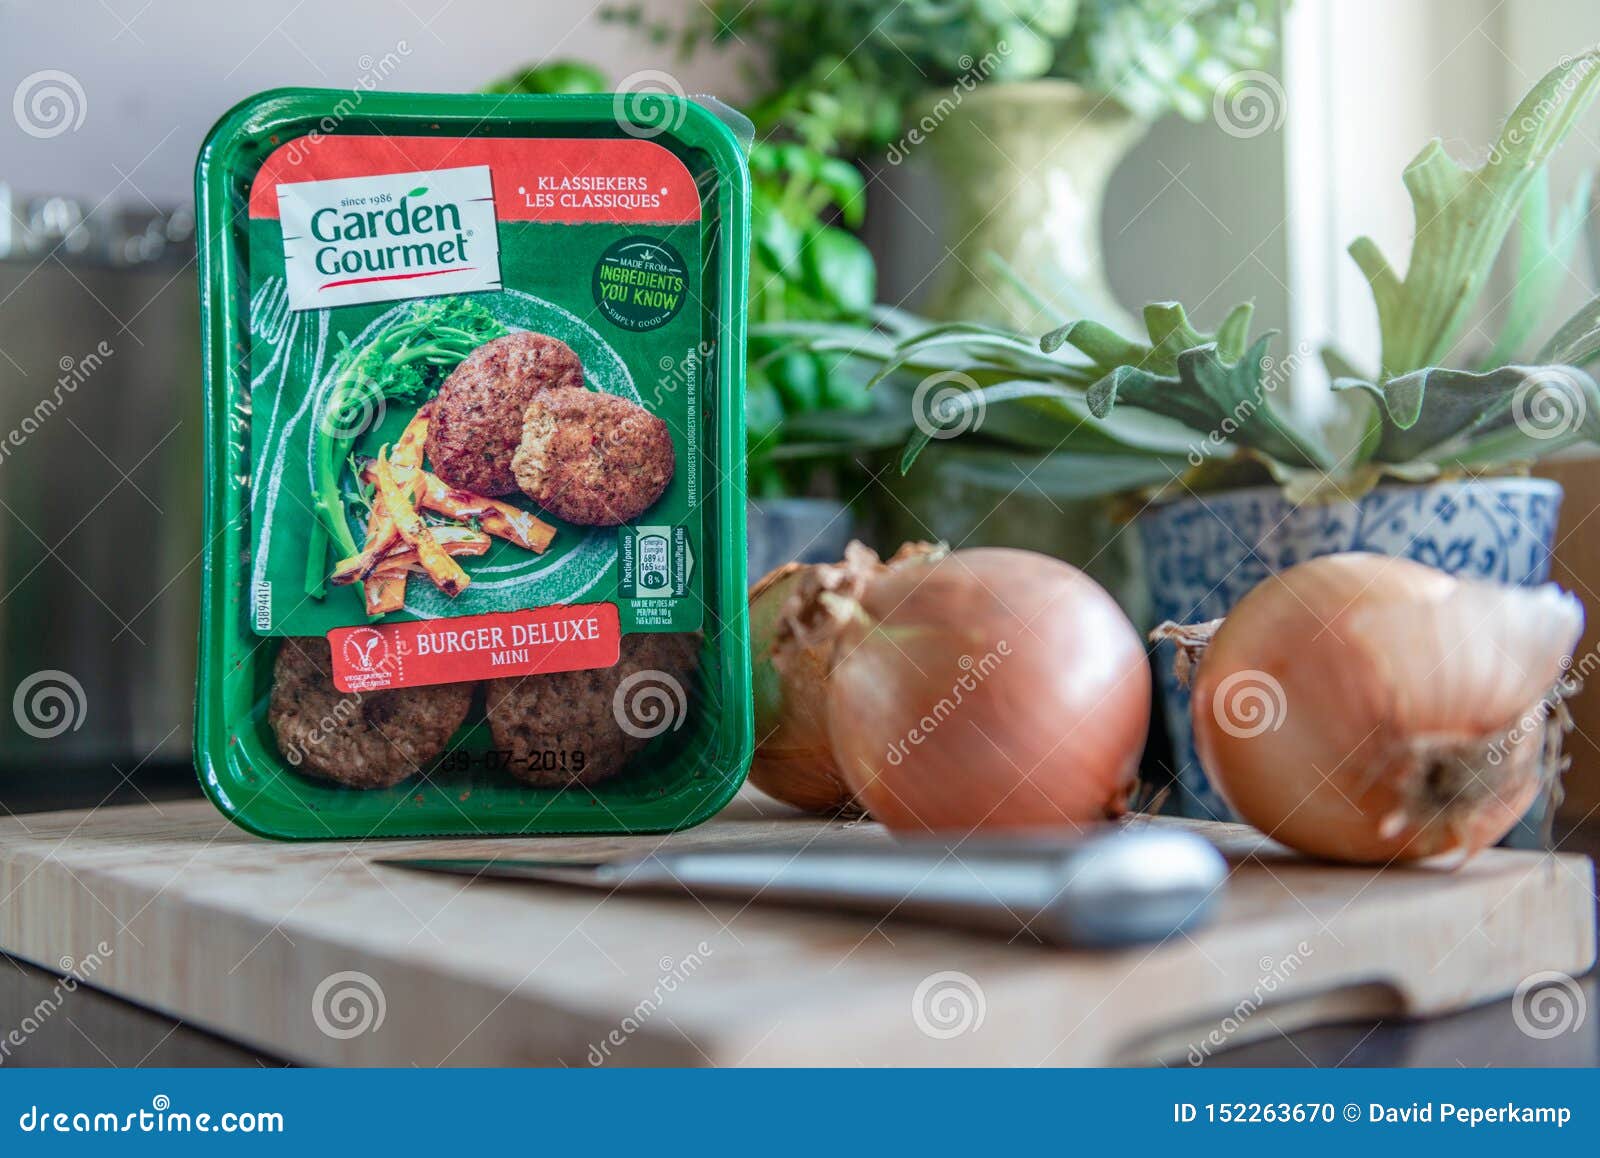 Garden Gourmet Vegetarian Burger Deluxe Editorial Image Image Of